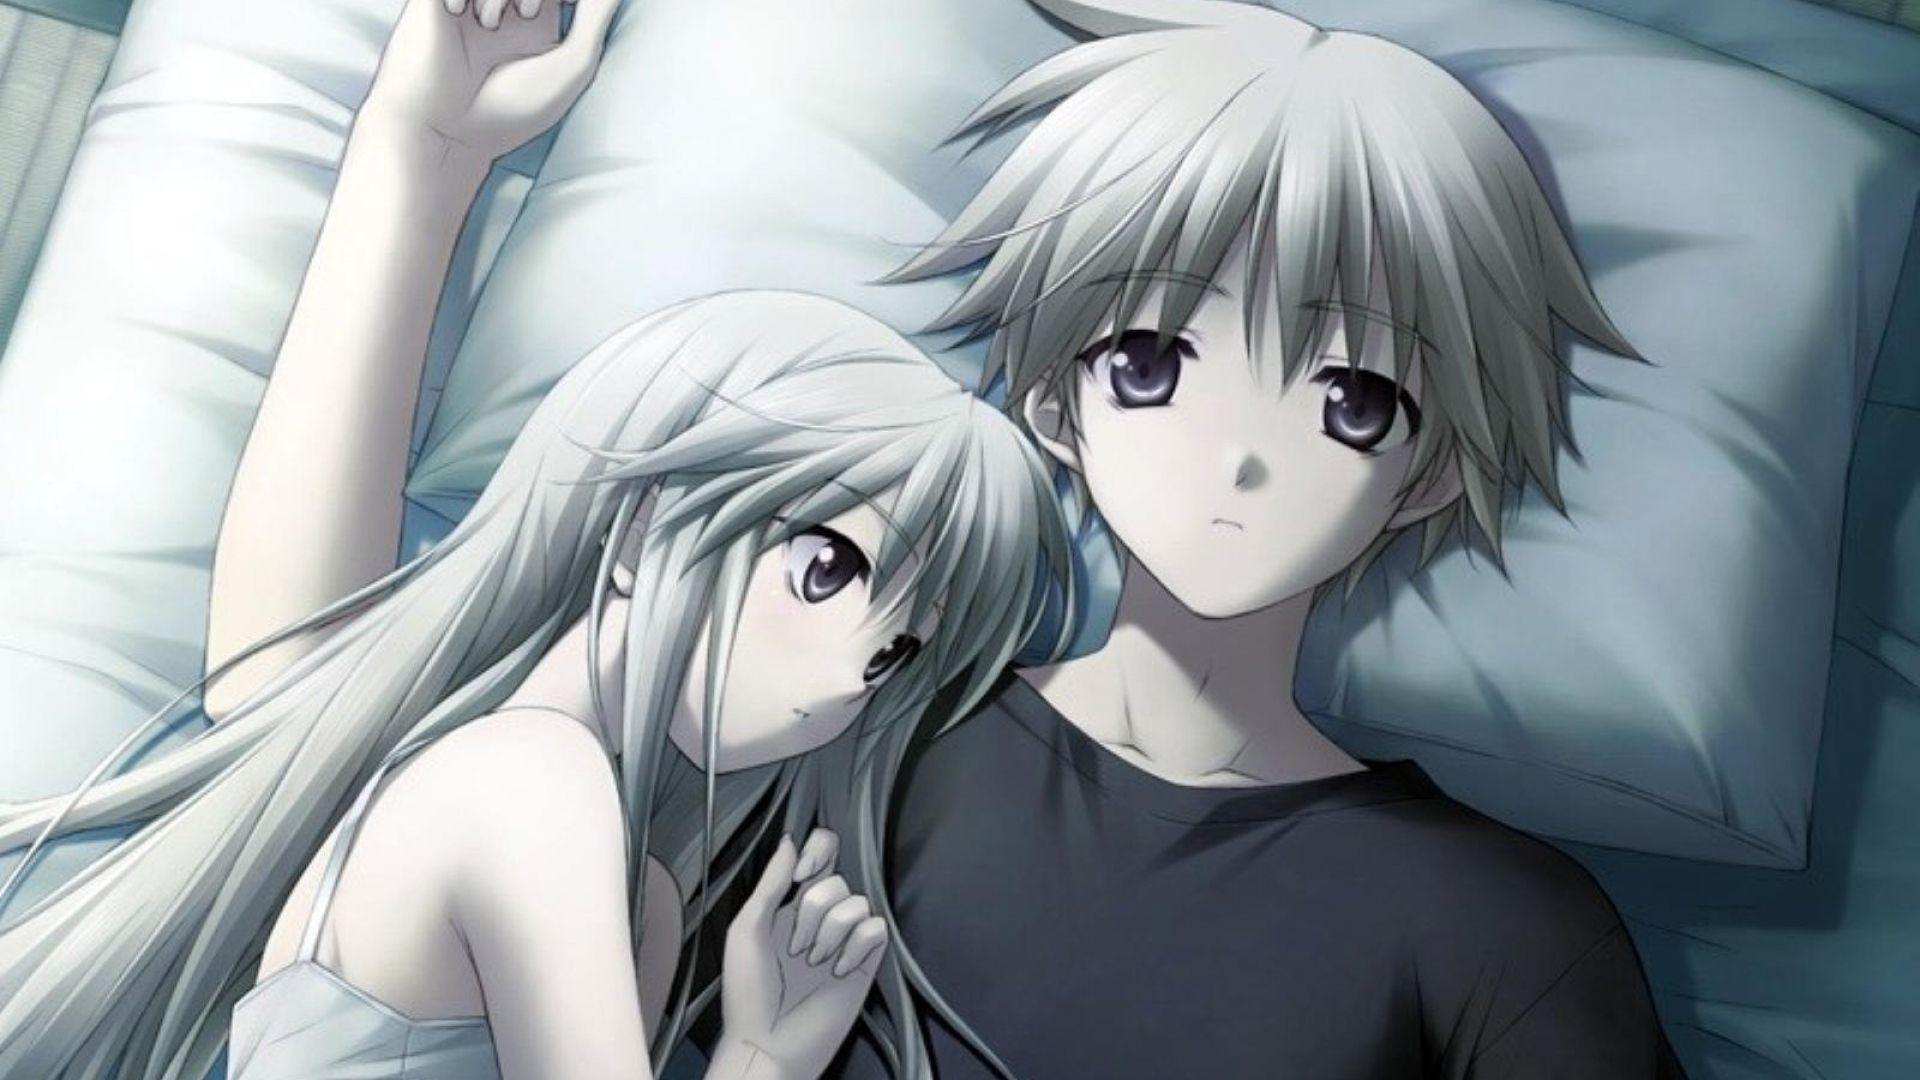 Cry sad and couple anime 85896 on animeshercom